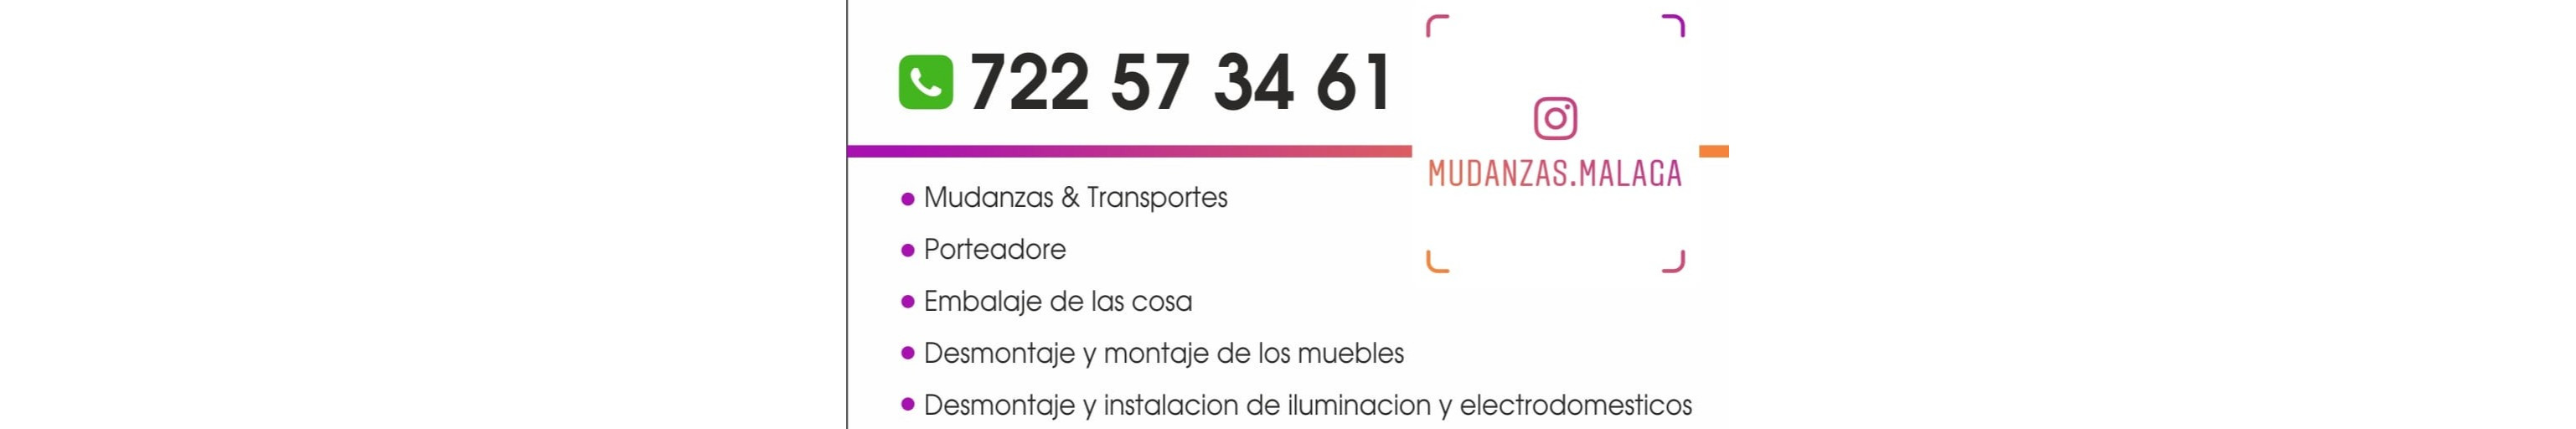 Mudanzas & Transportes Málaga